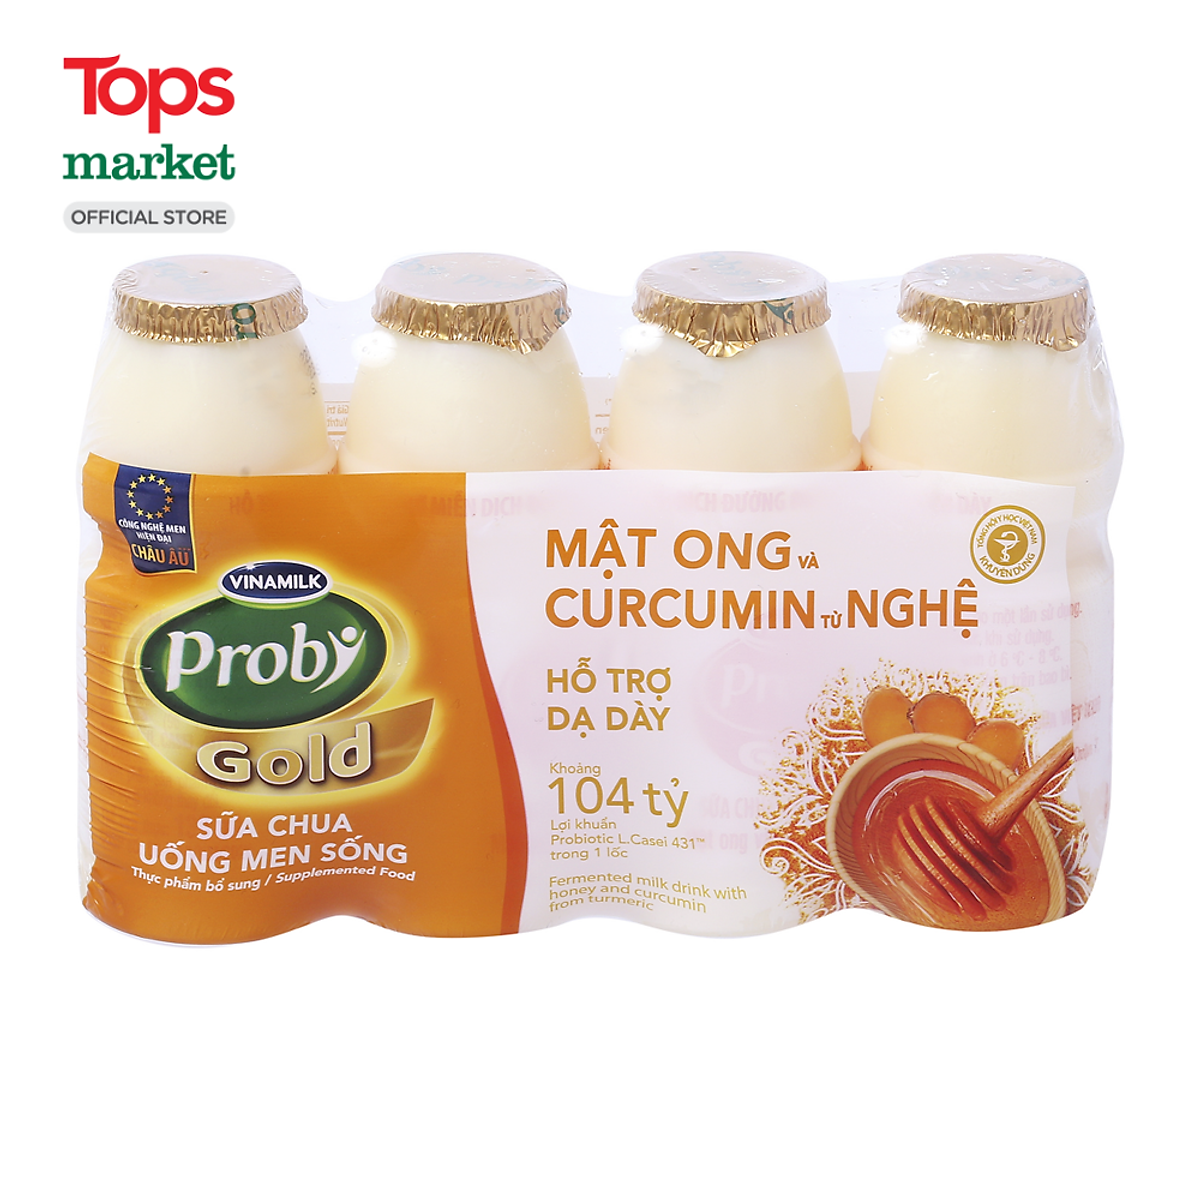 Sữa Chua Uống Men Sống Probi Gold Mật Ong Nghệ 4*130ML - Sữa chua ...